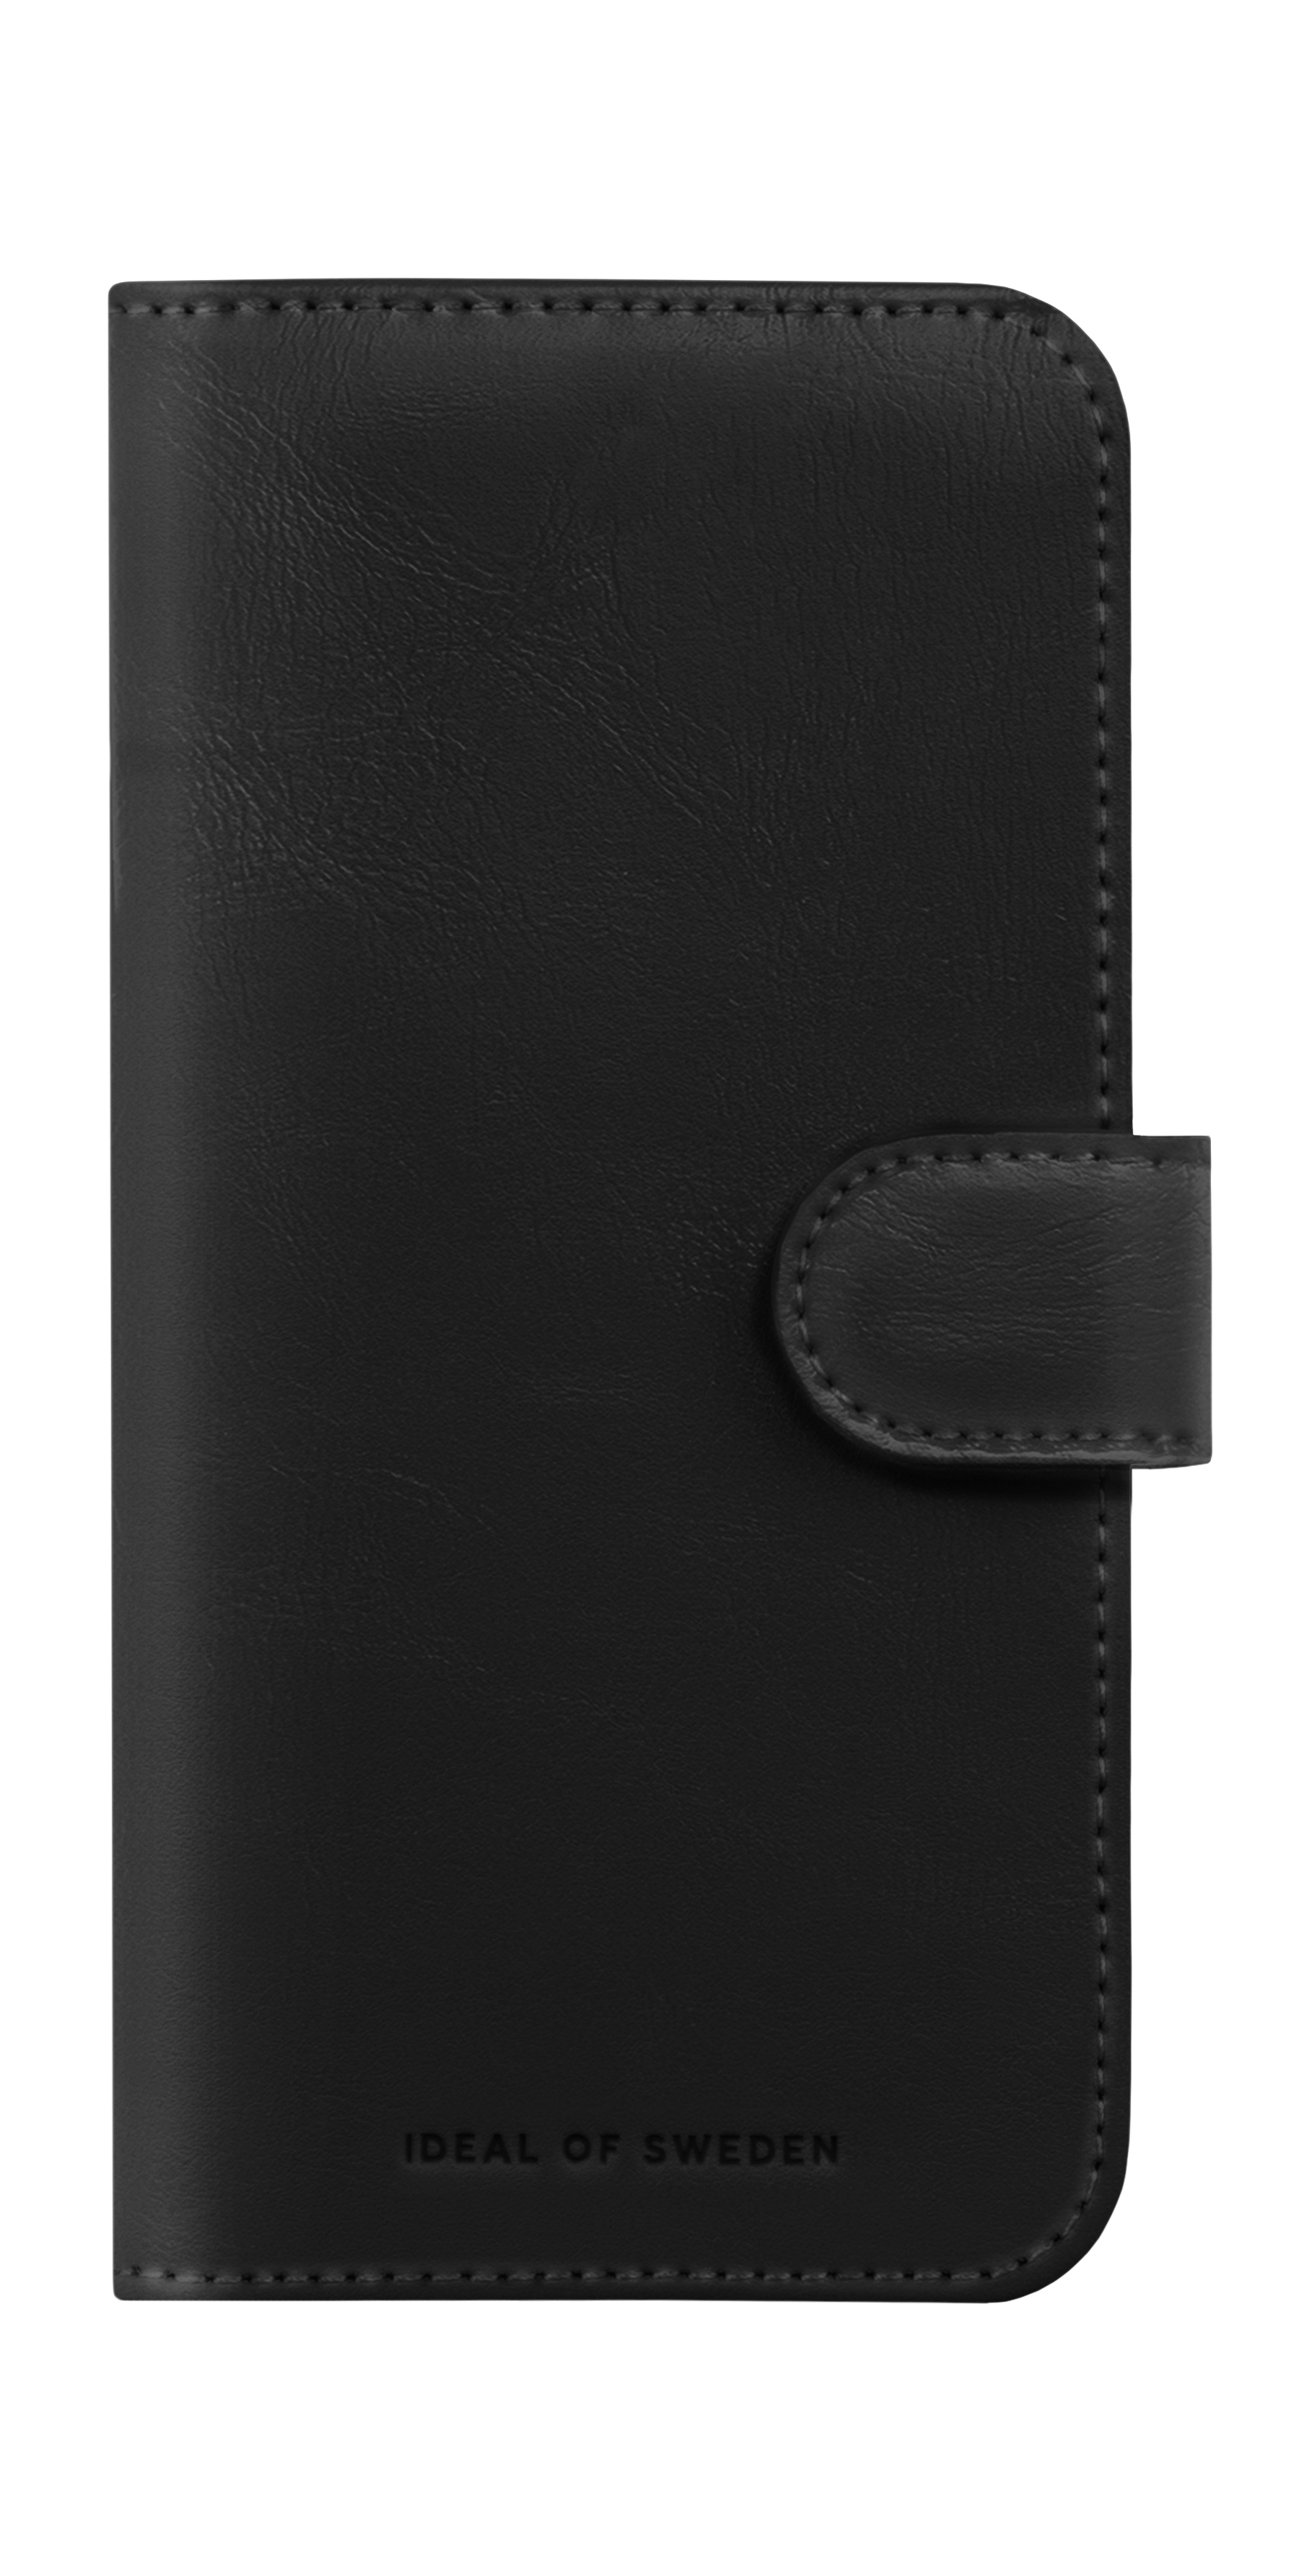 15, SWEDEN IDEAL Wallet+, Apple, Bookcover, Magnet iPhone OF Black